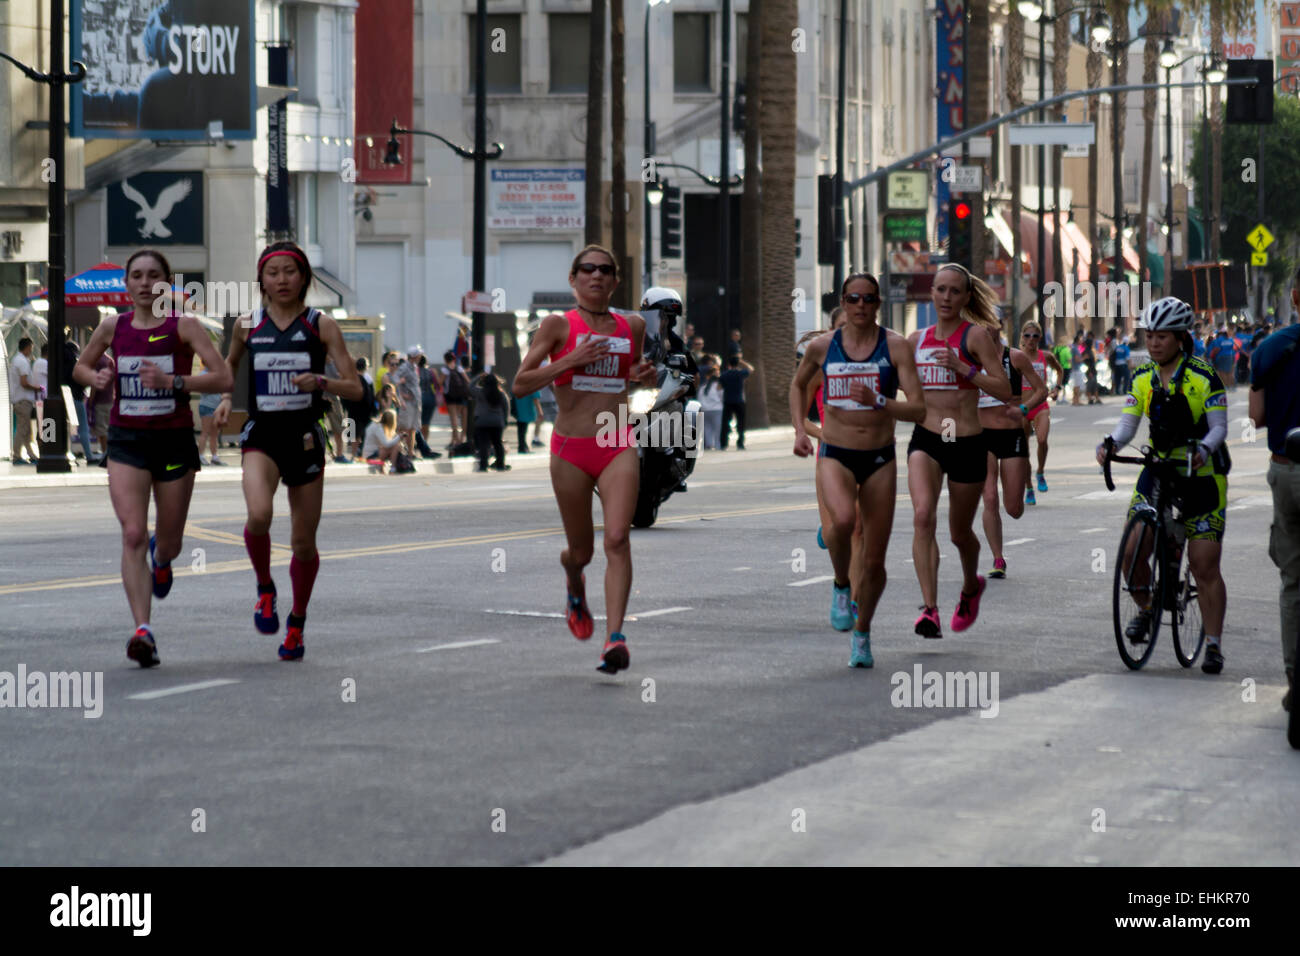 Los Angeles, Californie, USA. 15 mars, 2015. Les femmes de l'élite coureurs au kilomètre 11 de la la Marathon. Banque D'Images